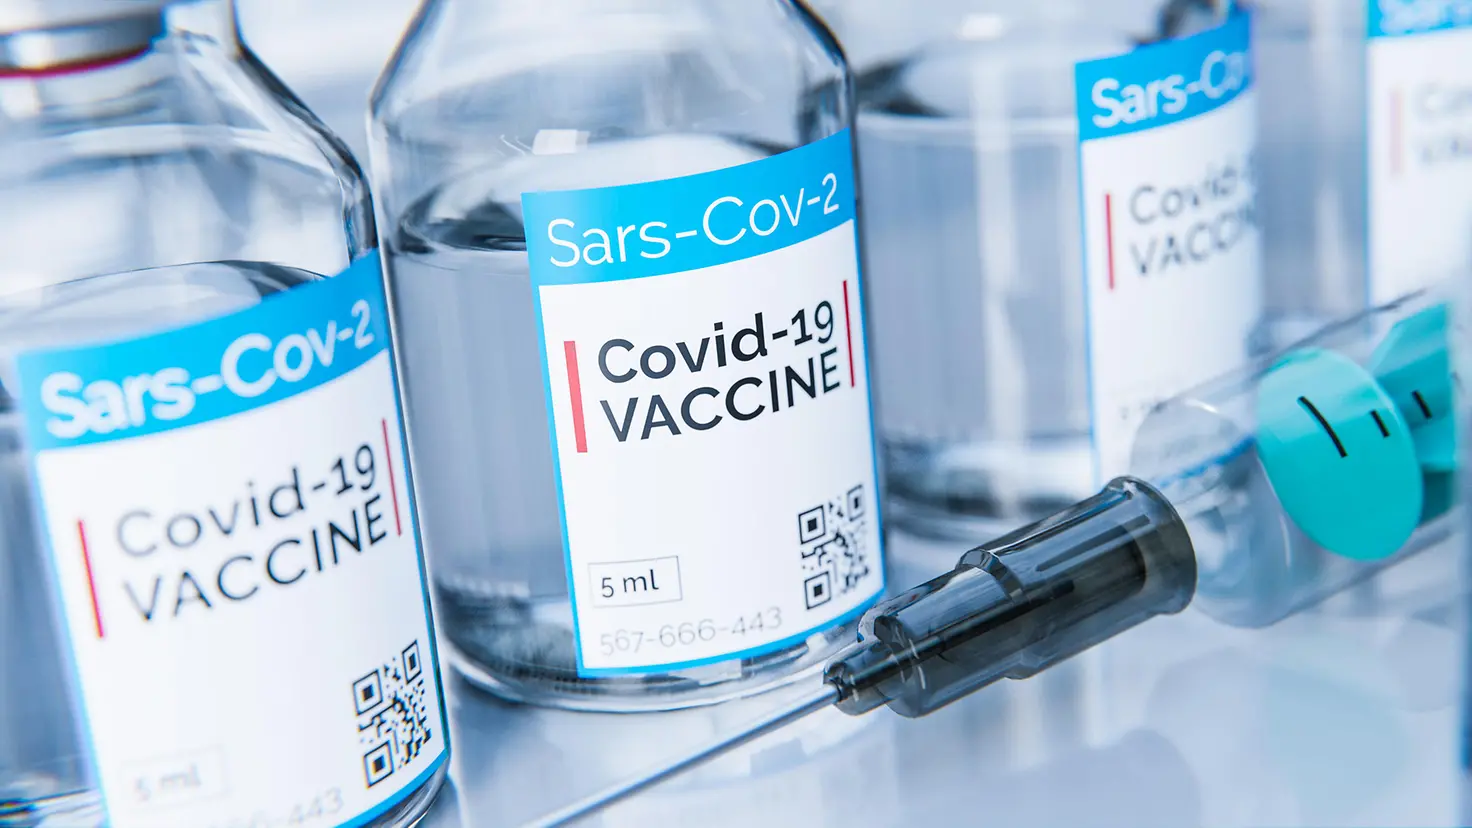 Das Bild zeigt Fläschchen mit Corona-Impfstoff neben einer Spritze.